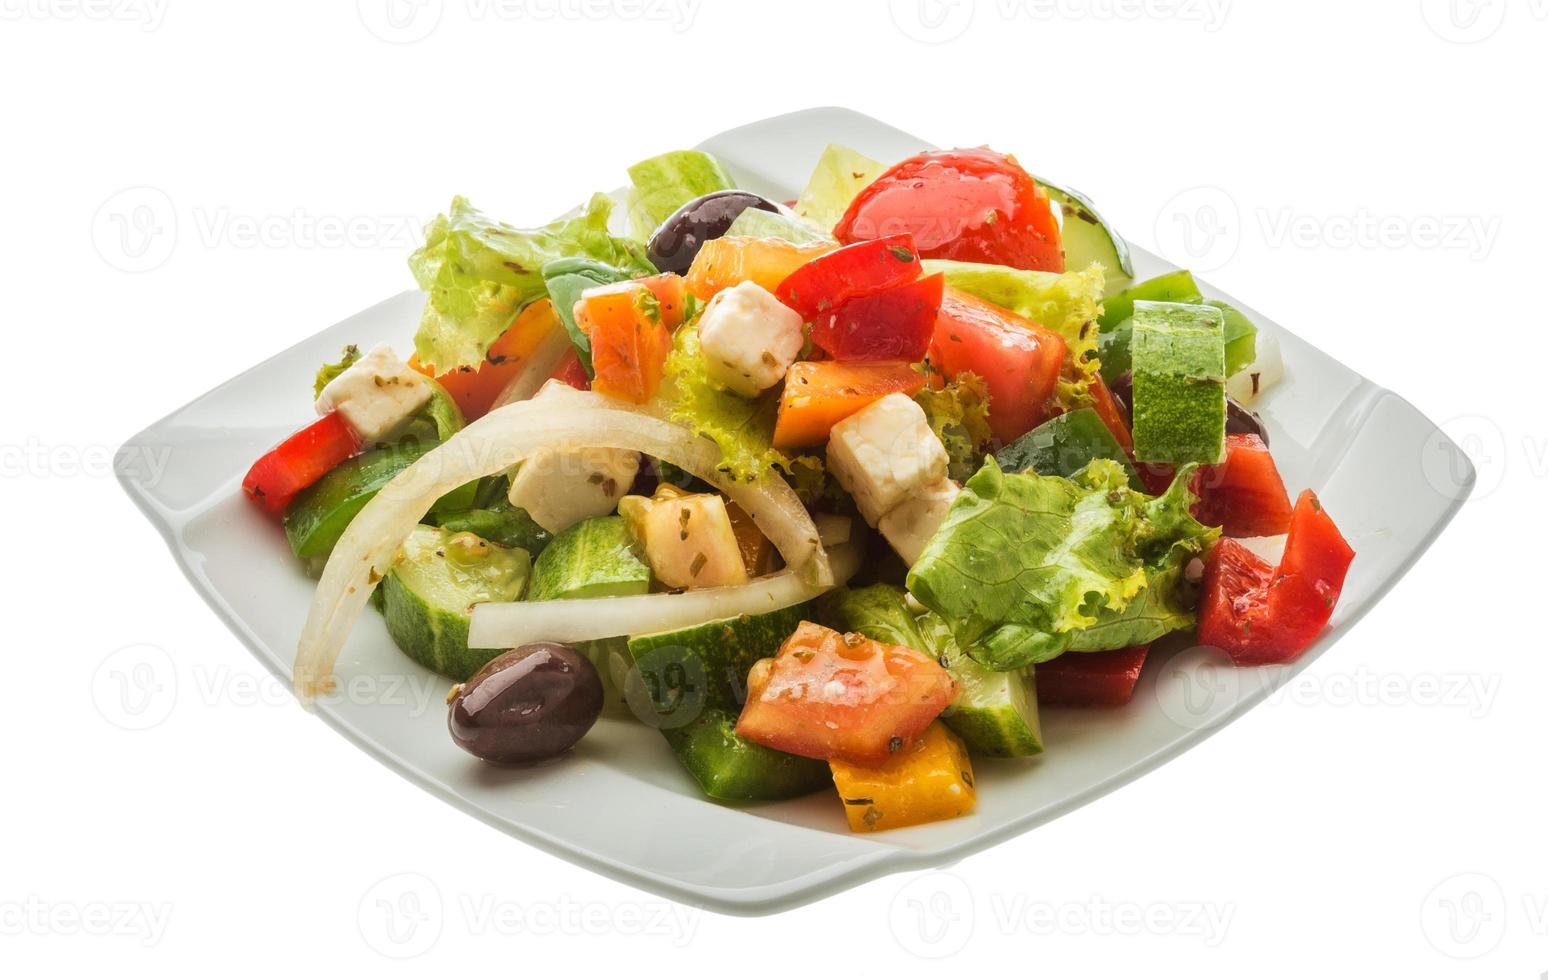 délicieuse salade grecque photo